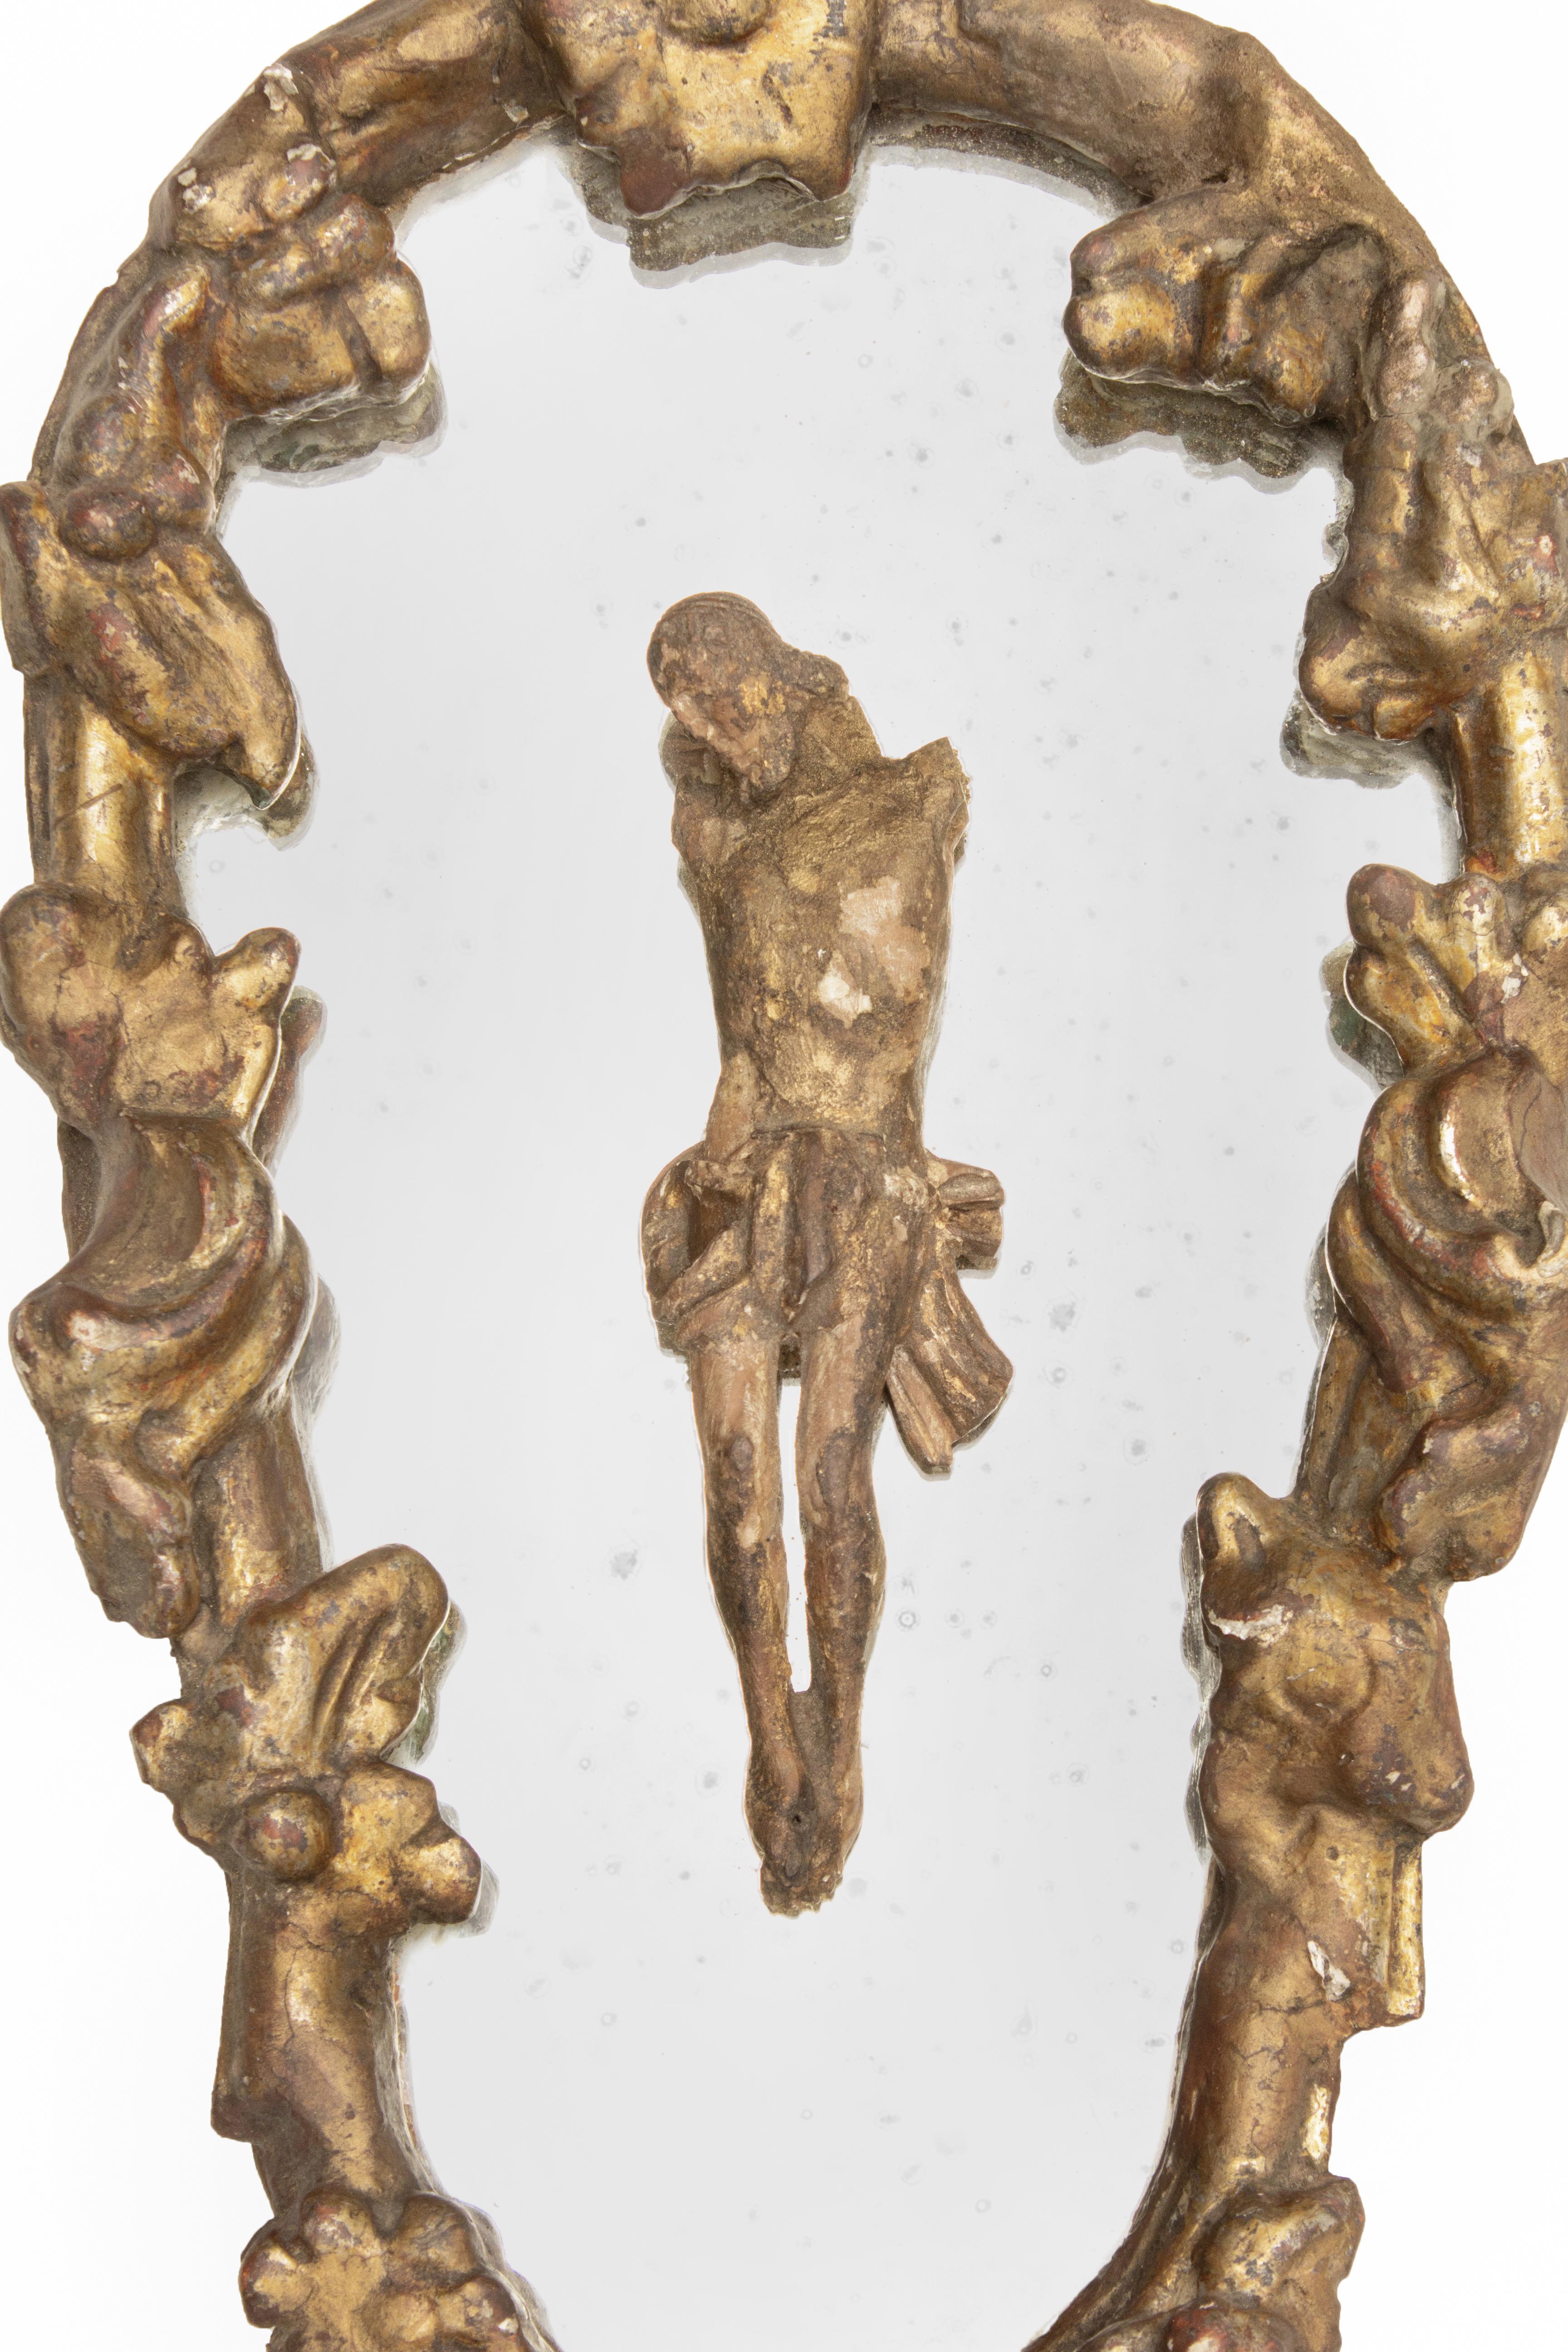 Miroir italien du XVIIIe siècle sculpté à la main dans la feuille d'or avec une figure du Christ sculptée dans le bois sur le miroir original. 

Le miroir en feuille d'or est originaire de Ligurie. La figure italienne du Christ du 18e siècle est